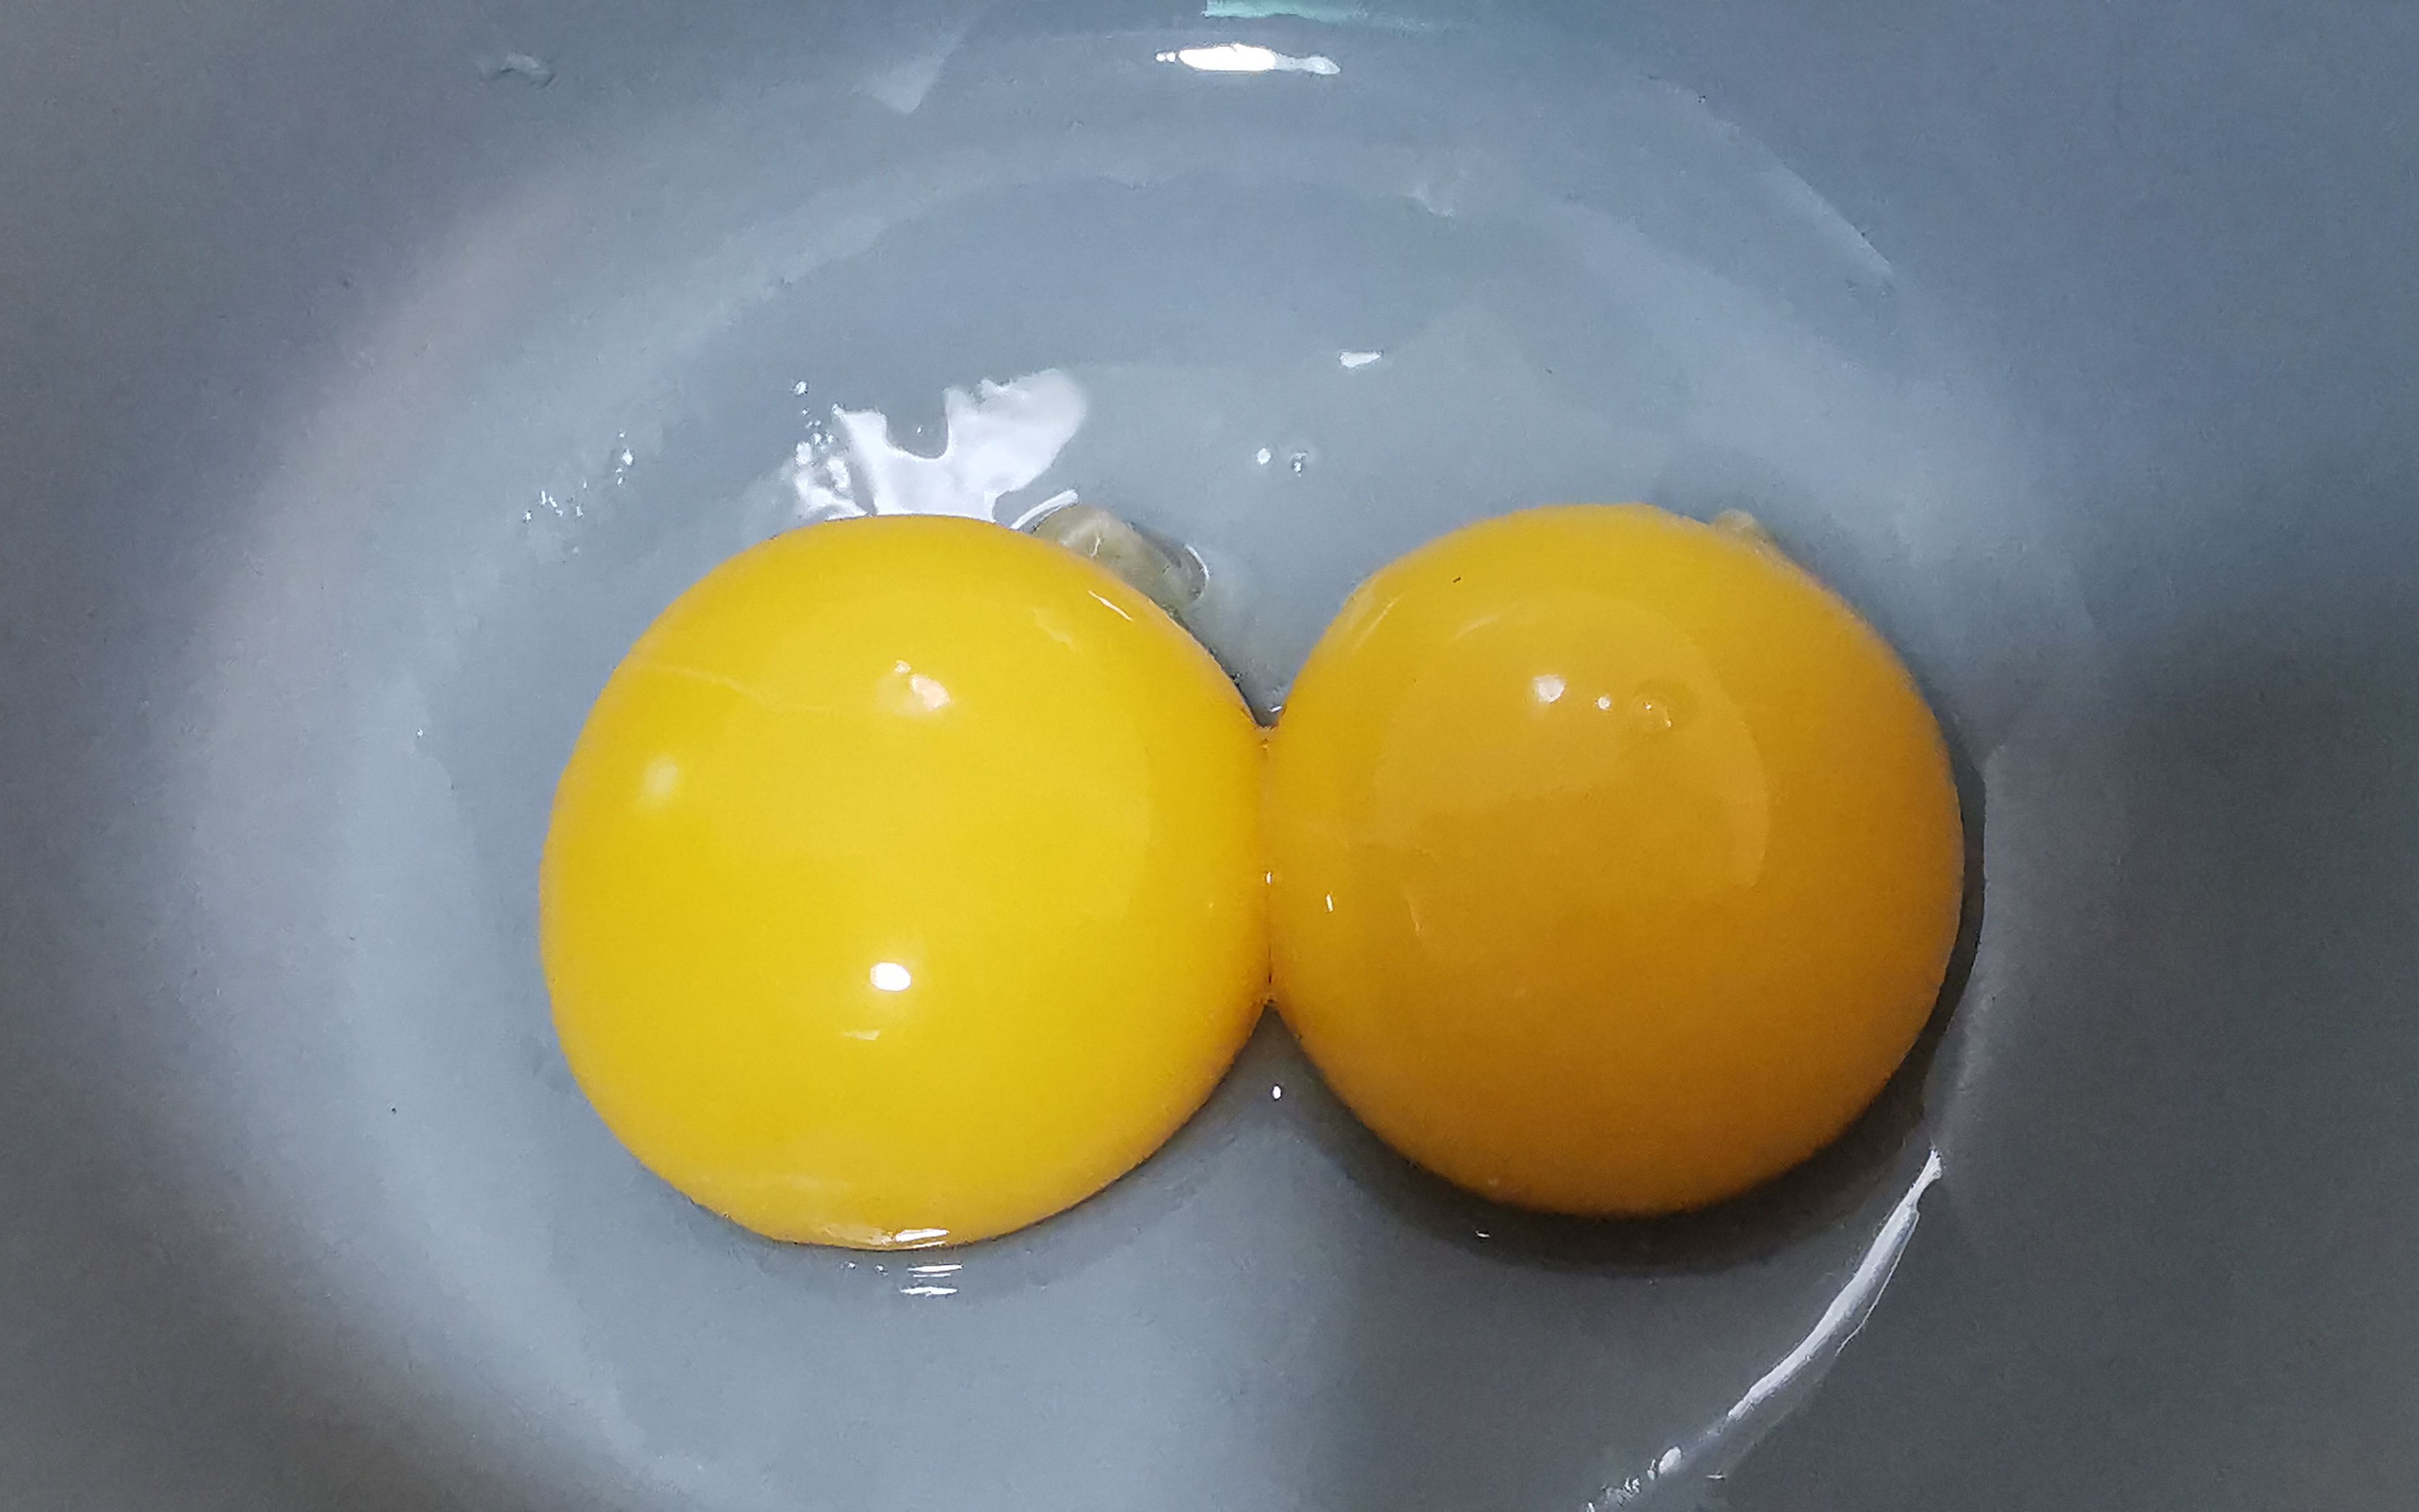 蛋黄和蛋清都是液体，为什么没有混合在一起呢？被孩子问懵了，要如何回答? - 知乎